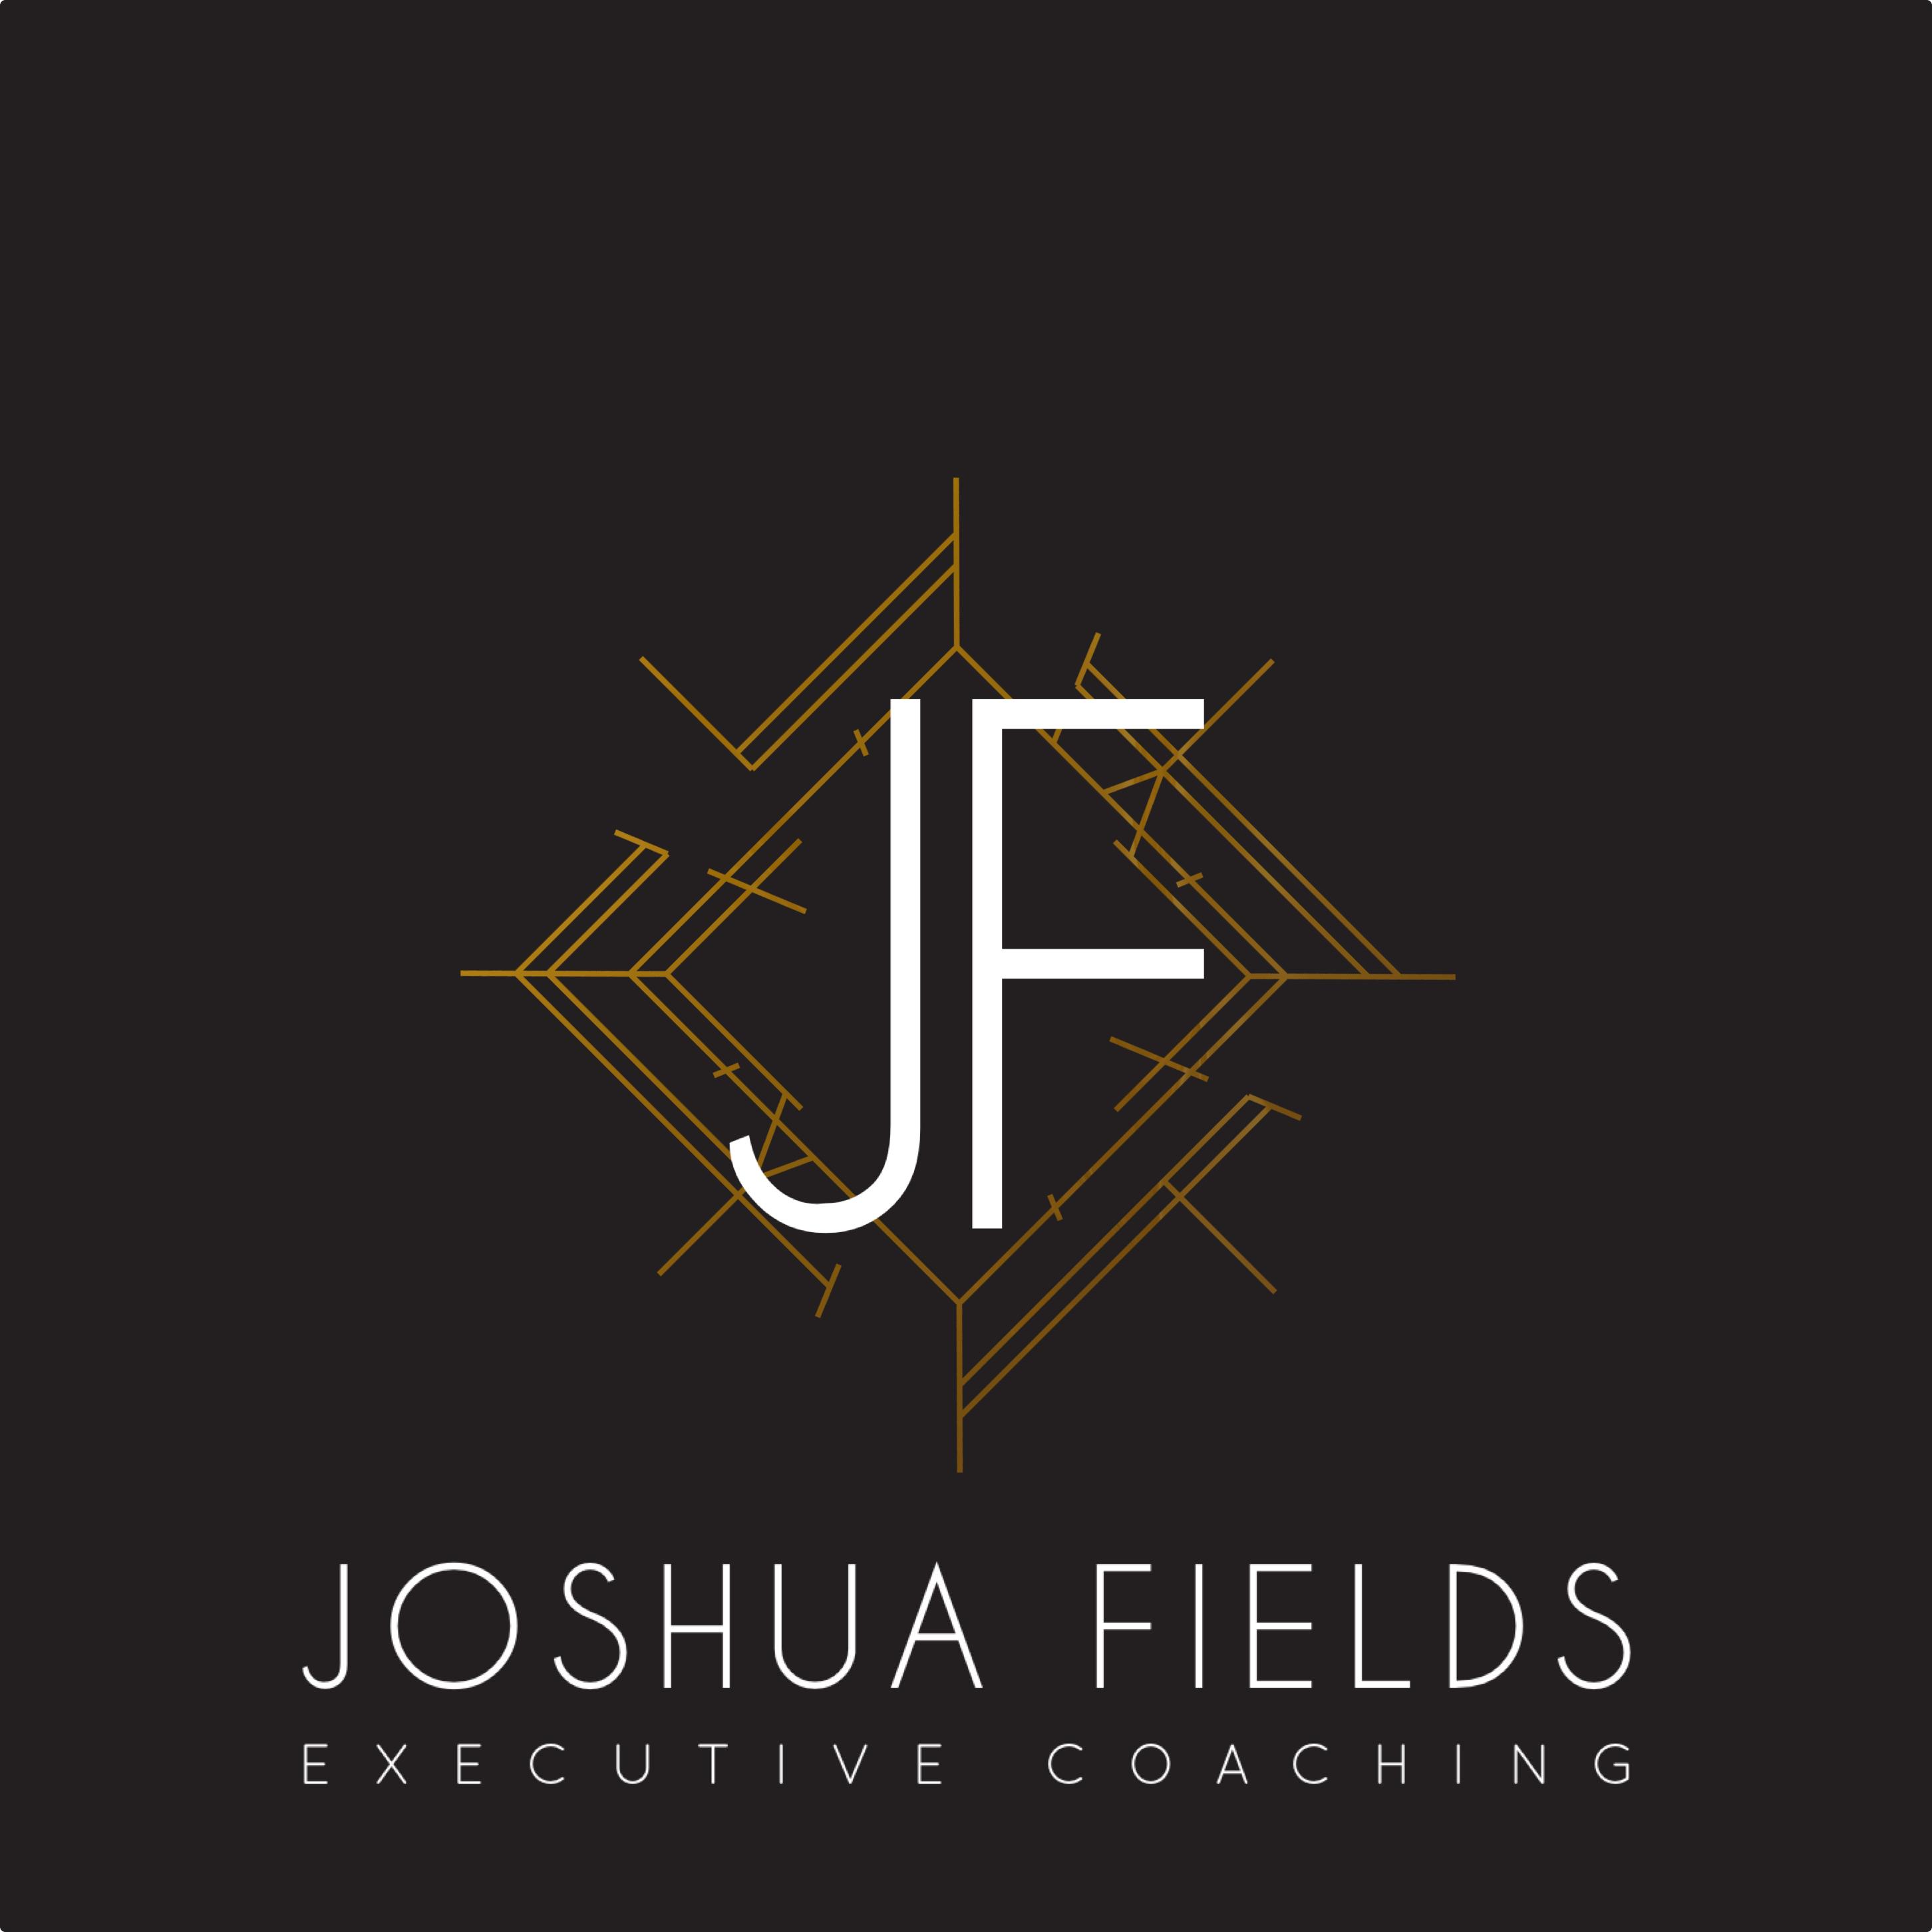 Joshua Fields